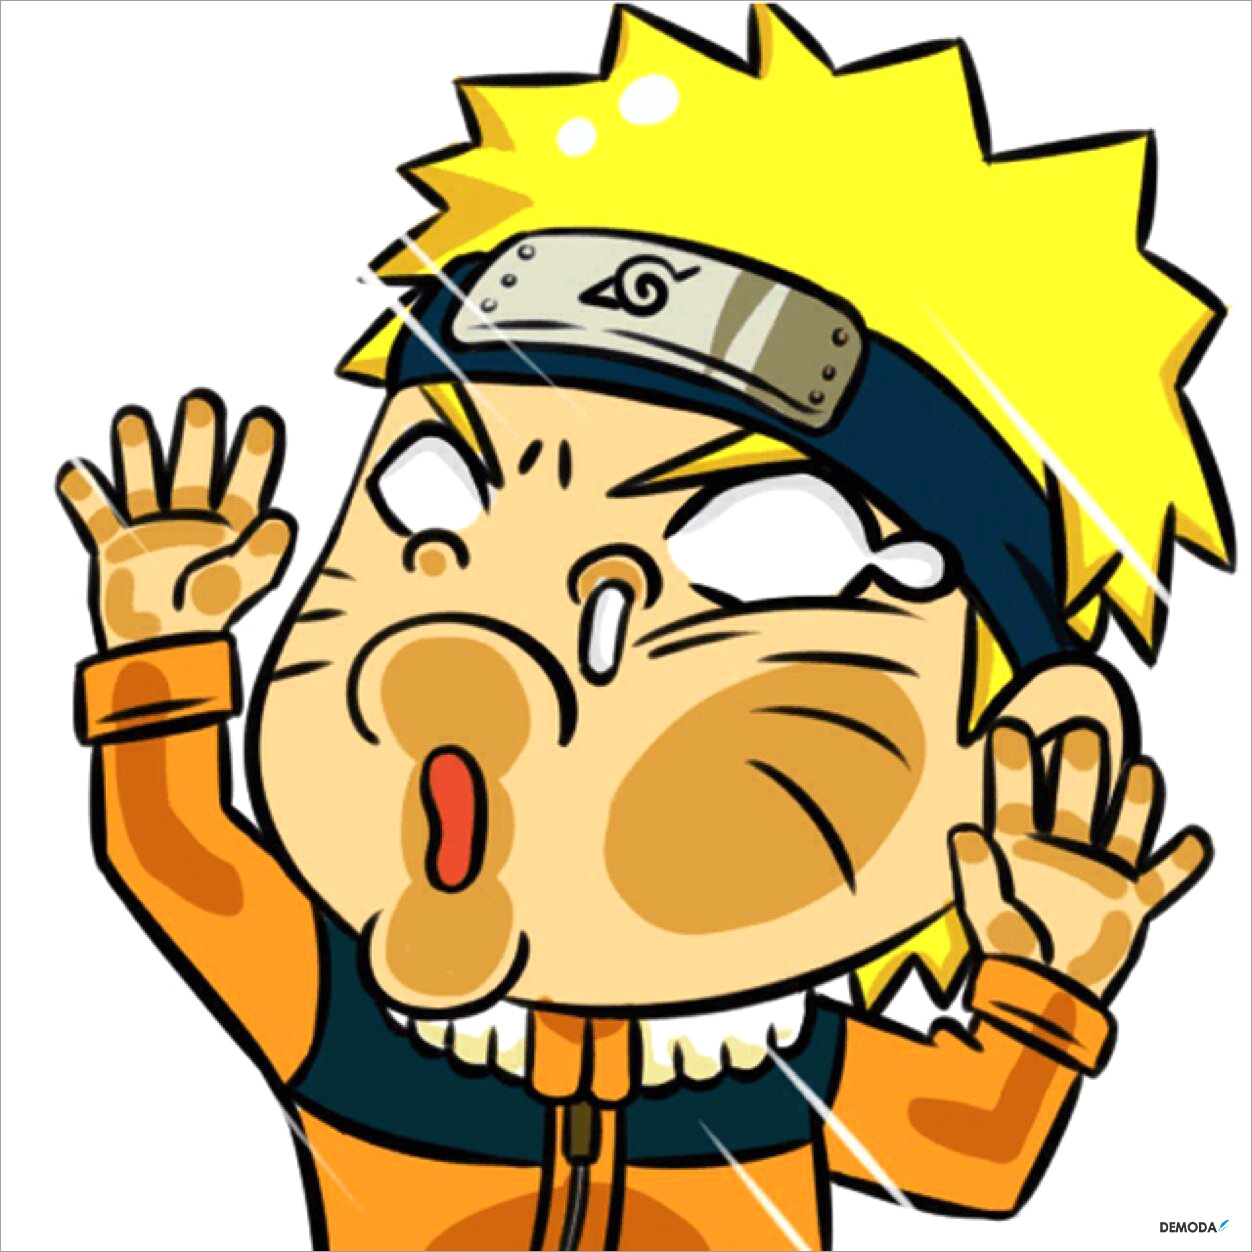 Những bức ảnh Naruto chế hài hước trên trang của chúng tôi sẽ khiến bạn không thể giữ được nước mắt trước sự sáng tạo và tiếp thu của cộng đồng fan Naruto nước nhà.